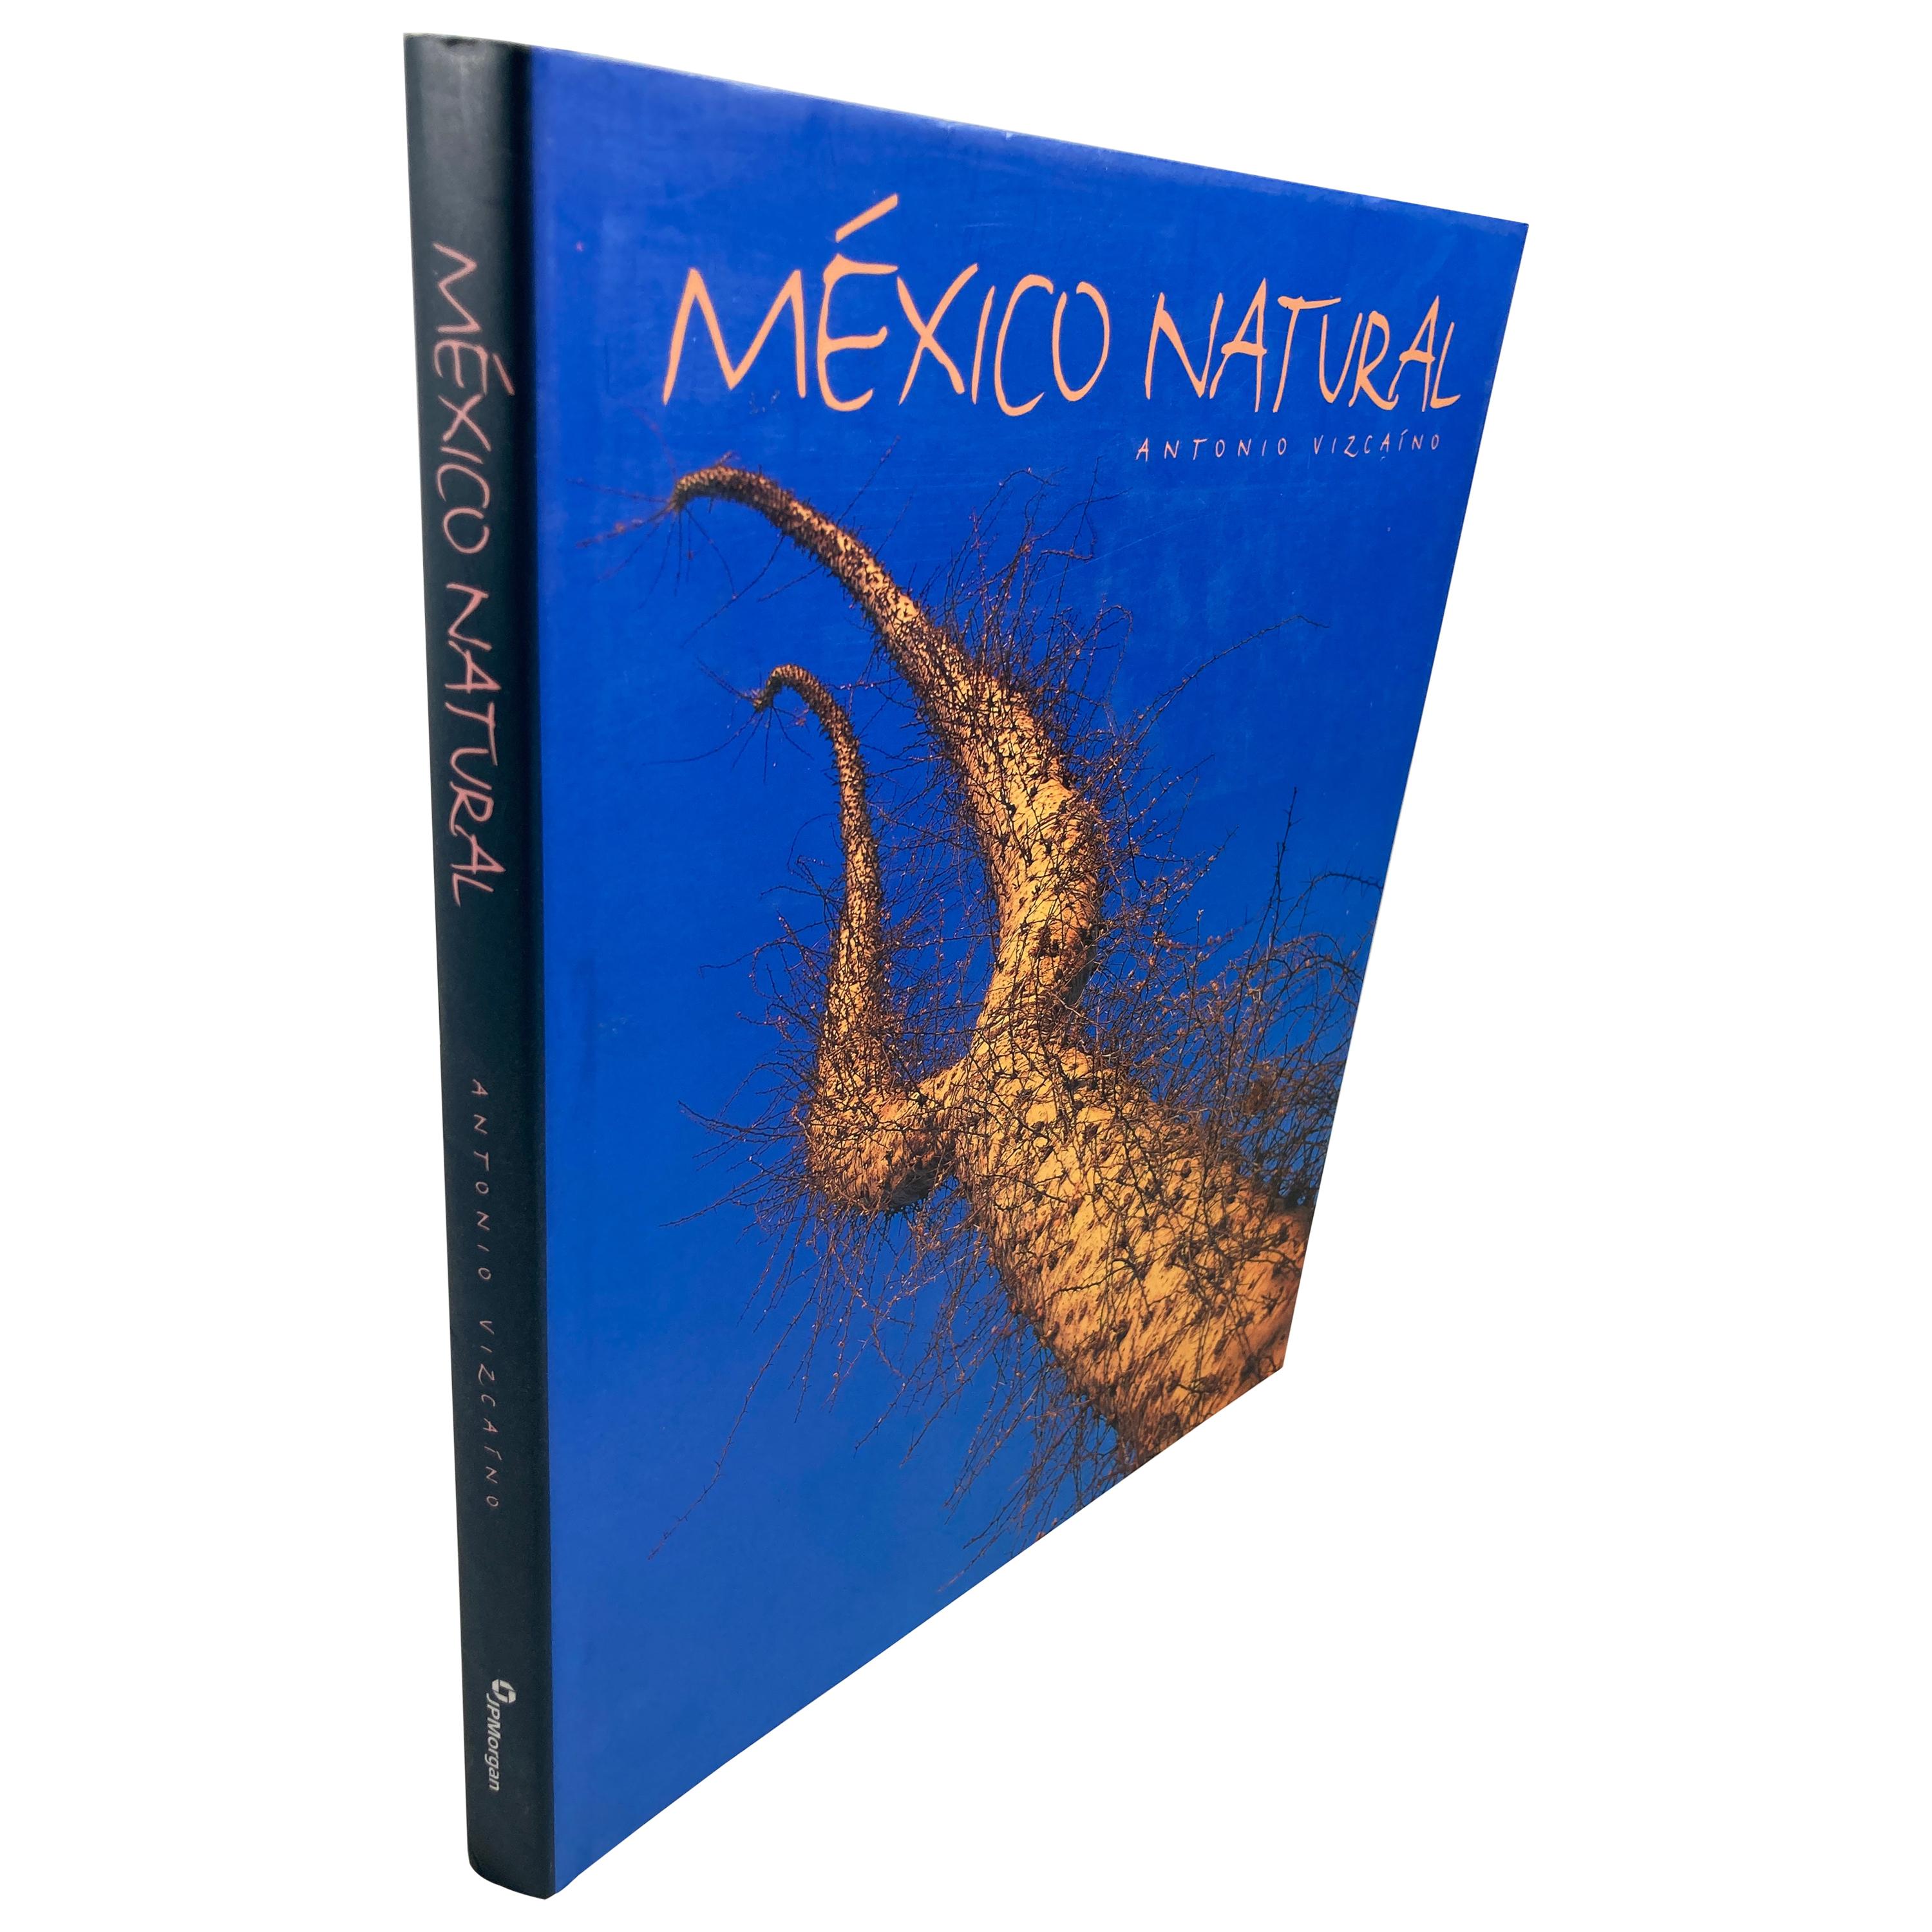 Mexico Natural by Antonio Vizcaino Hardcover Book